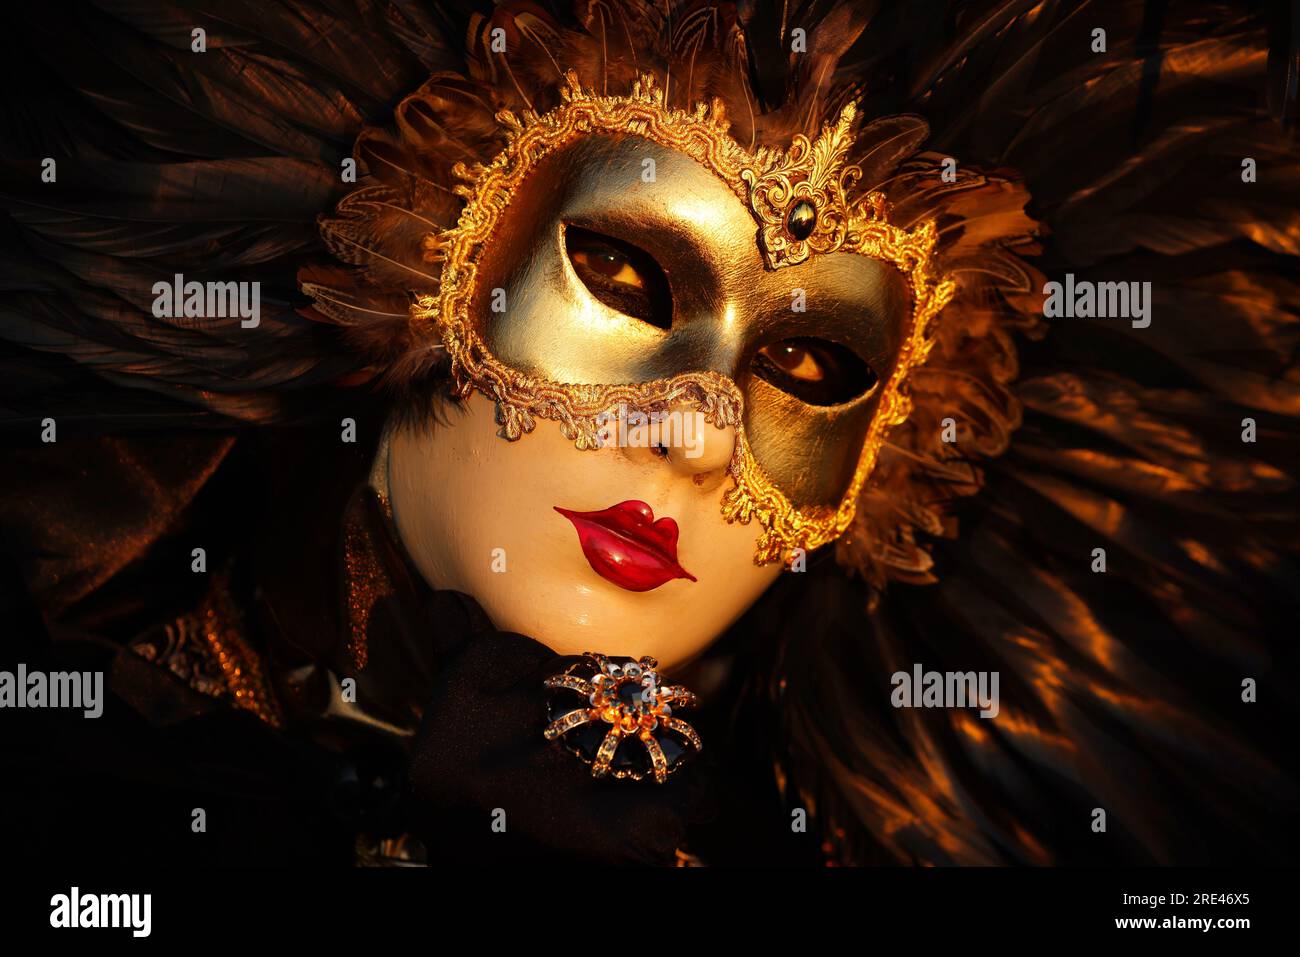 Mujer con máscara veneciana de oro: fotografía de stock © igorr1